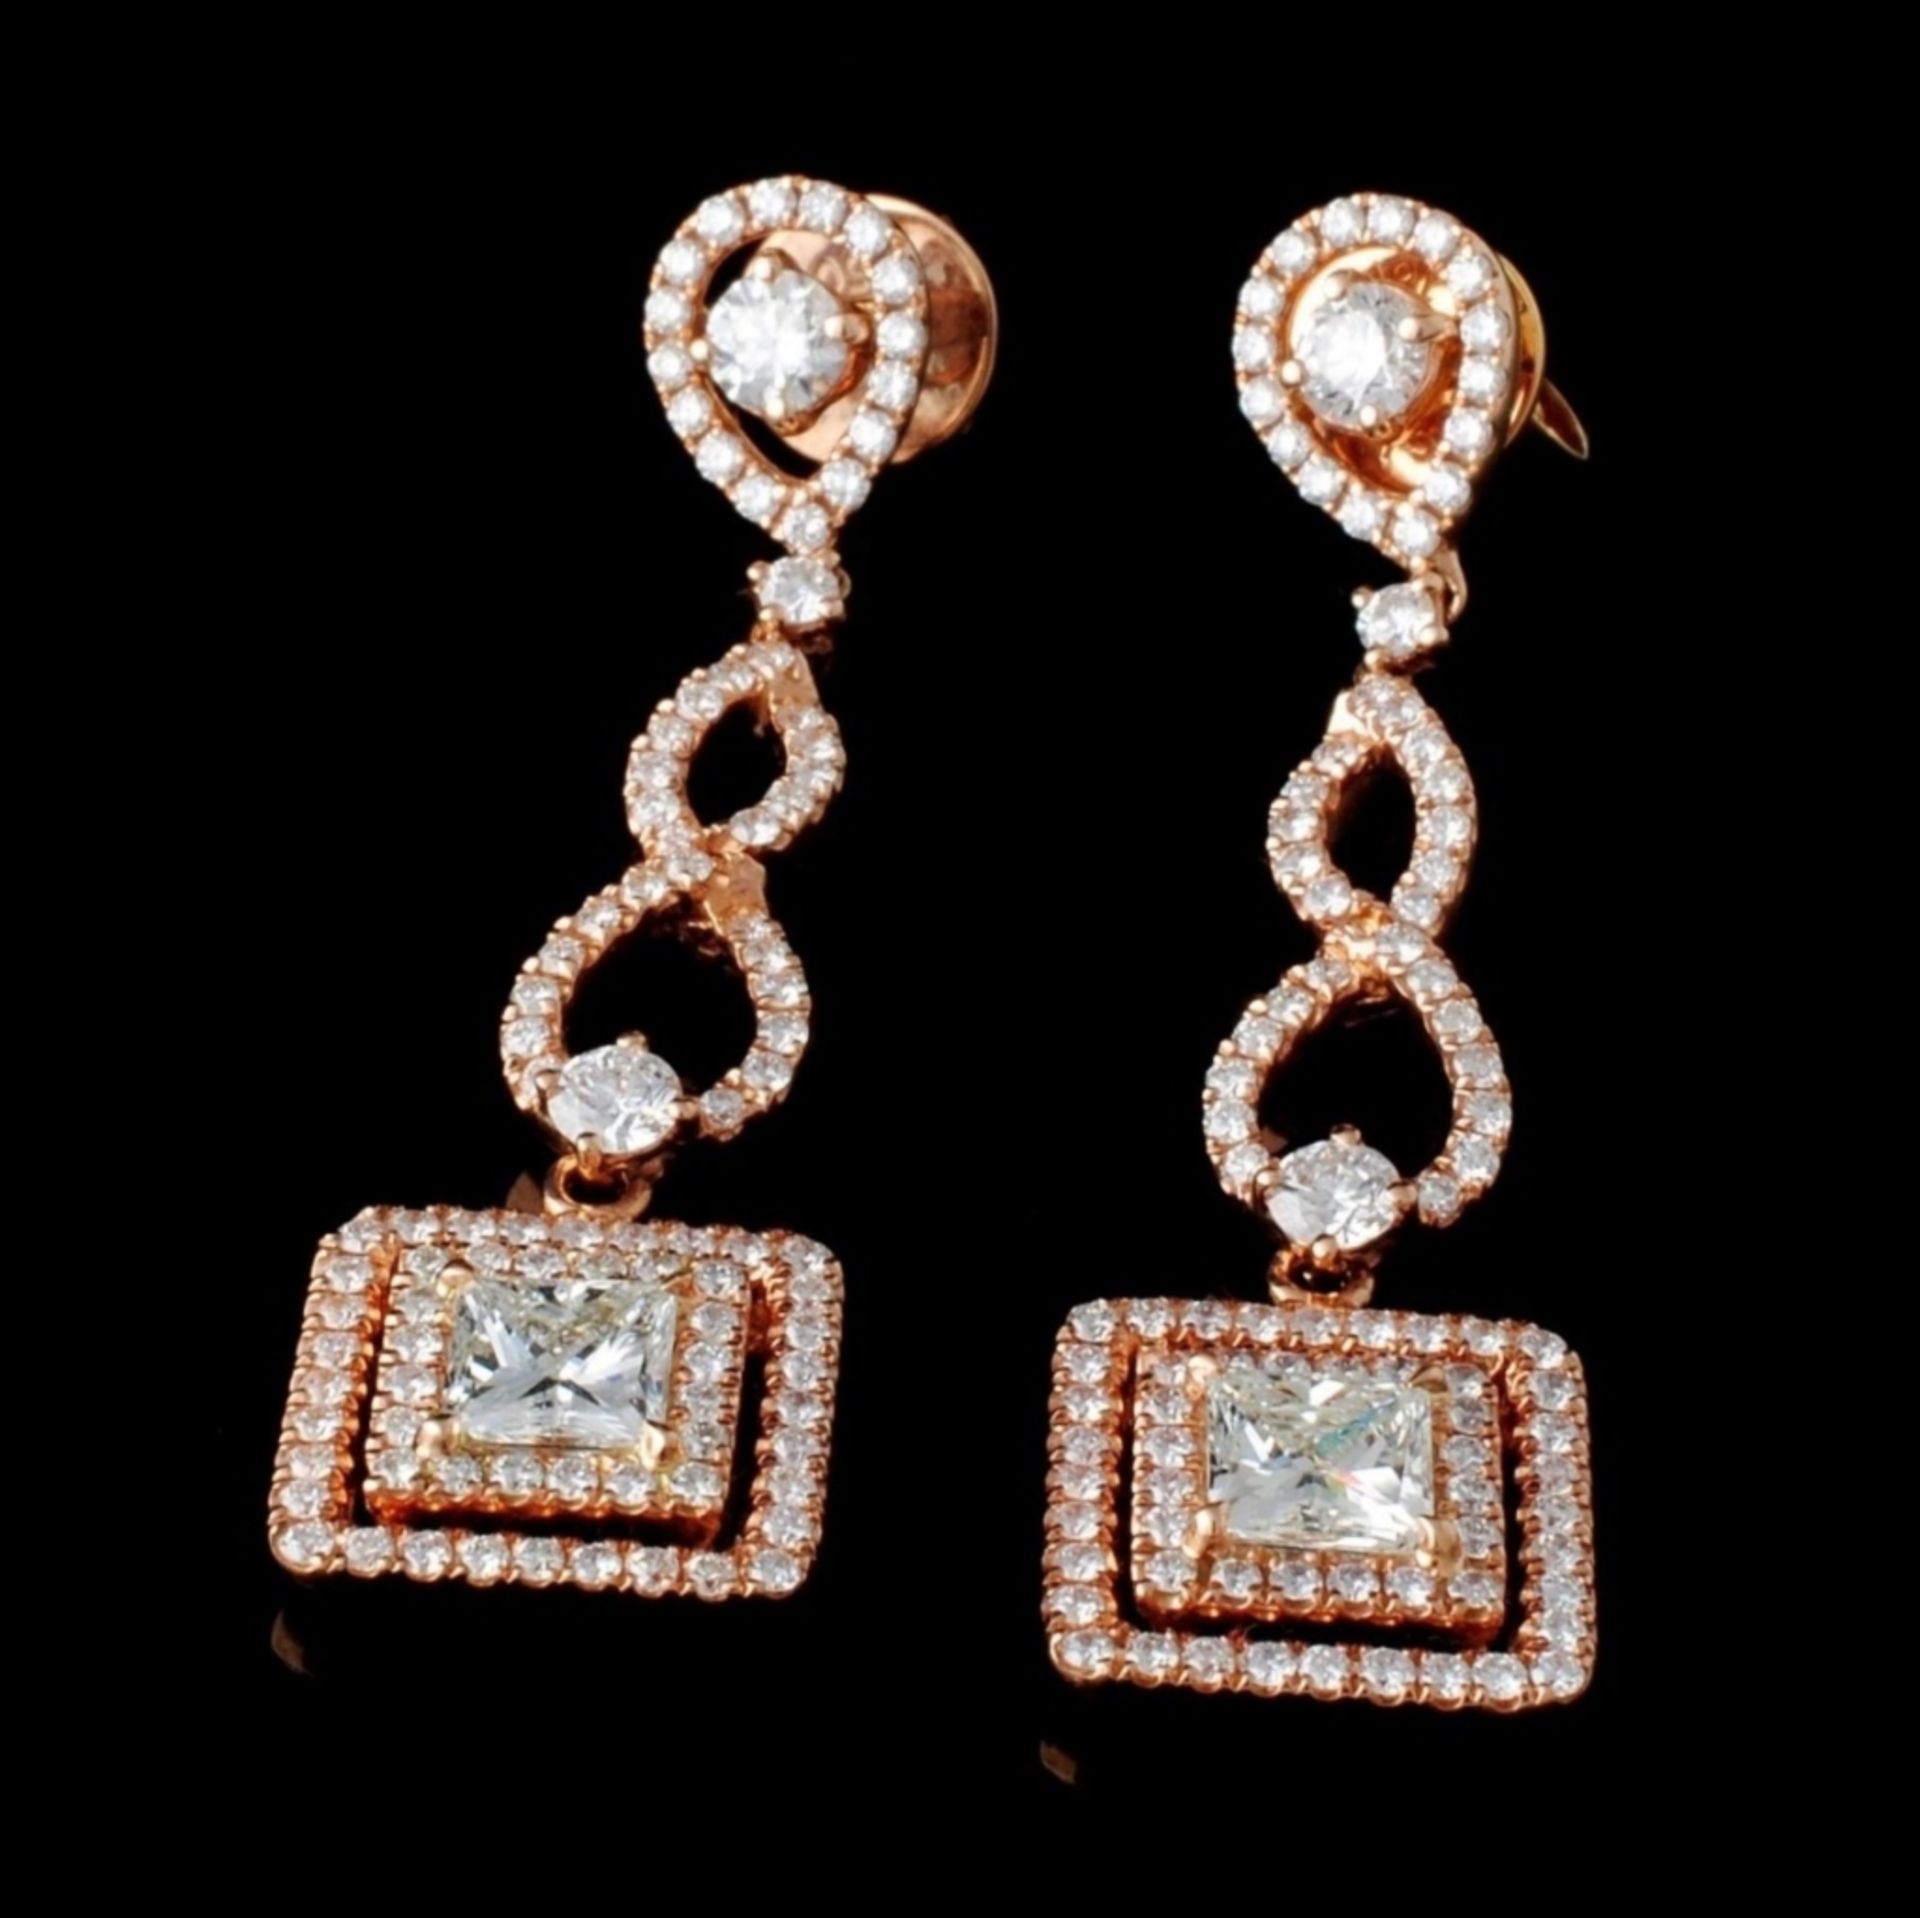 18K Rose Gold 2.58ctw Diamond Earrings - Image 2 of 3